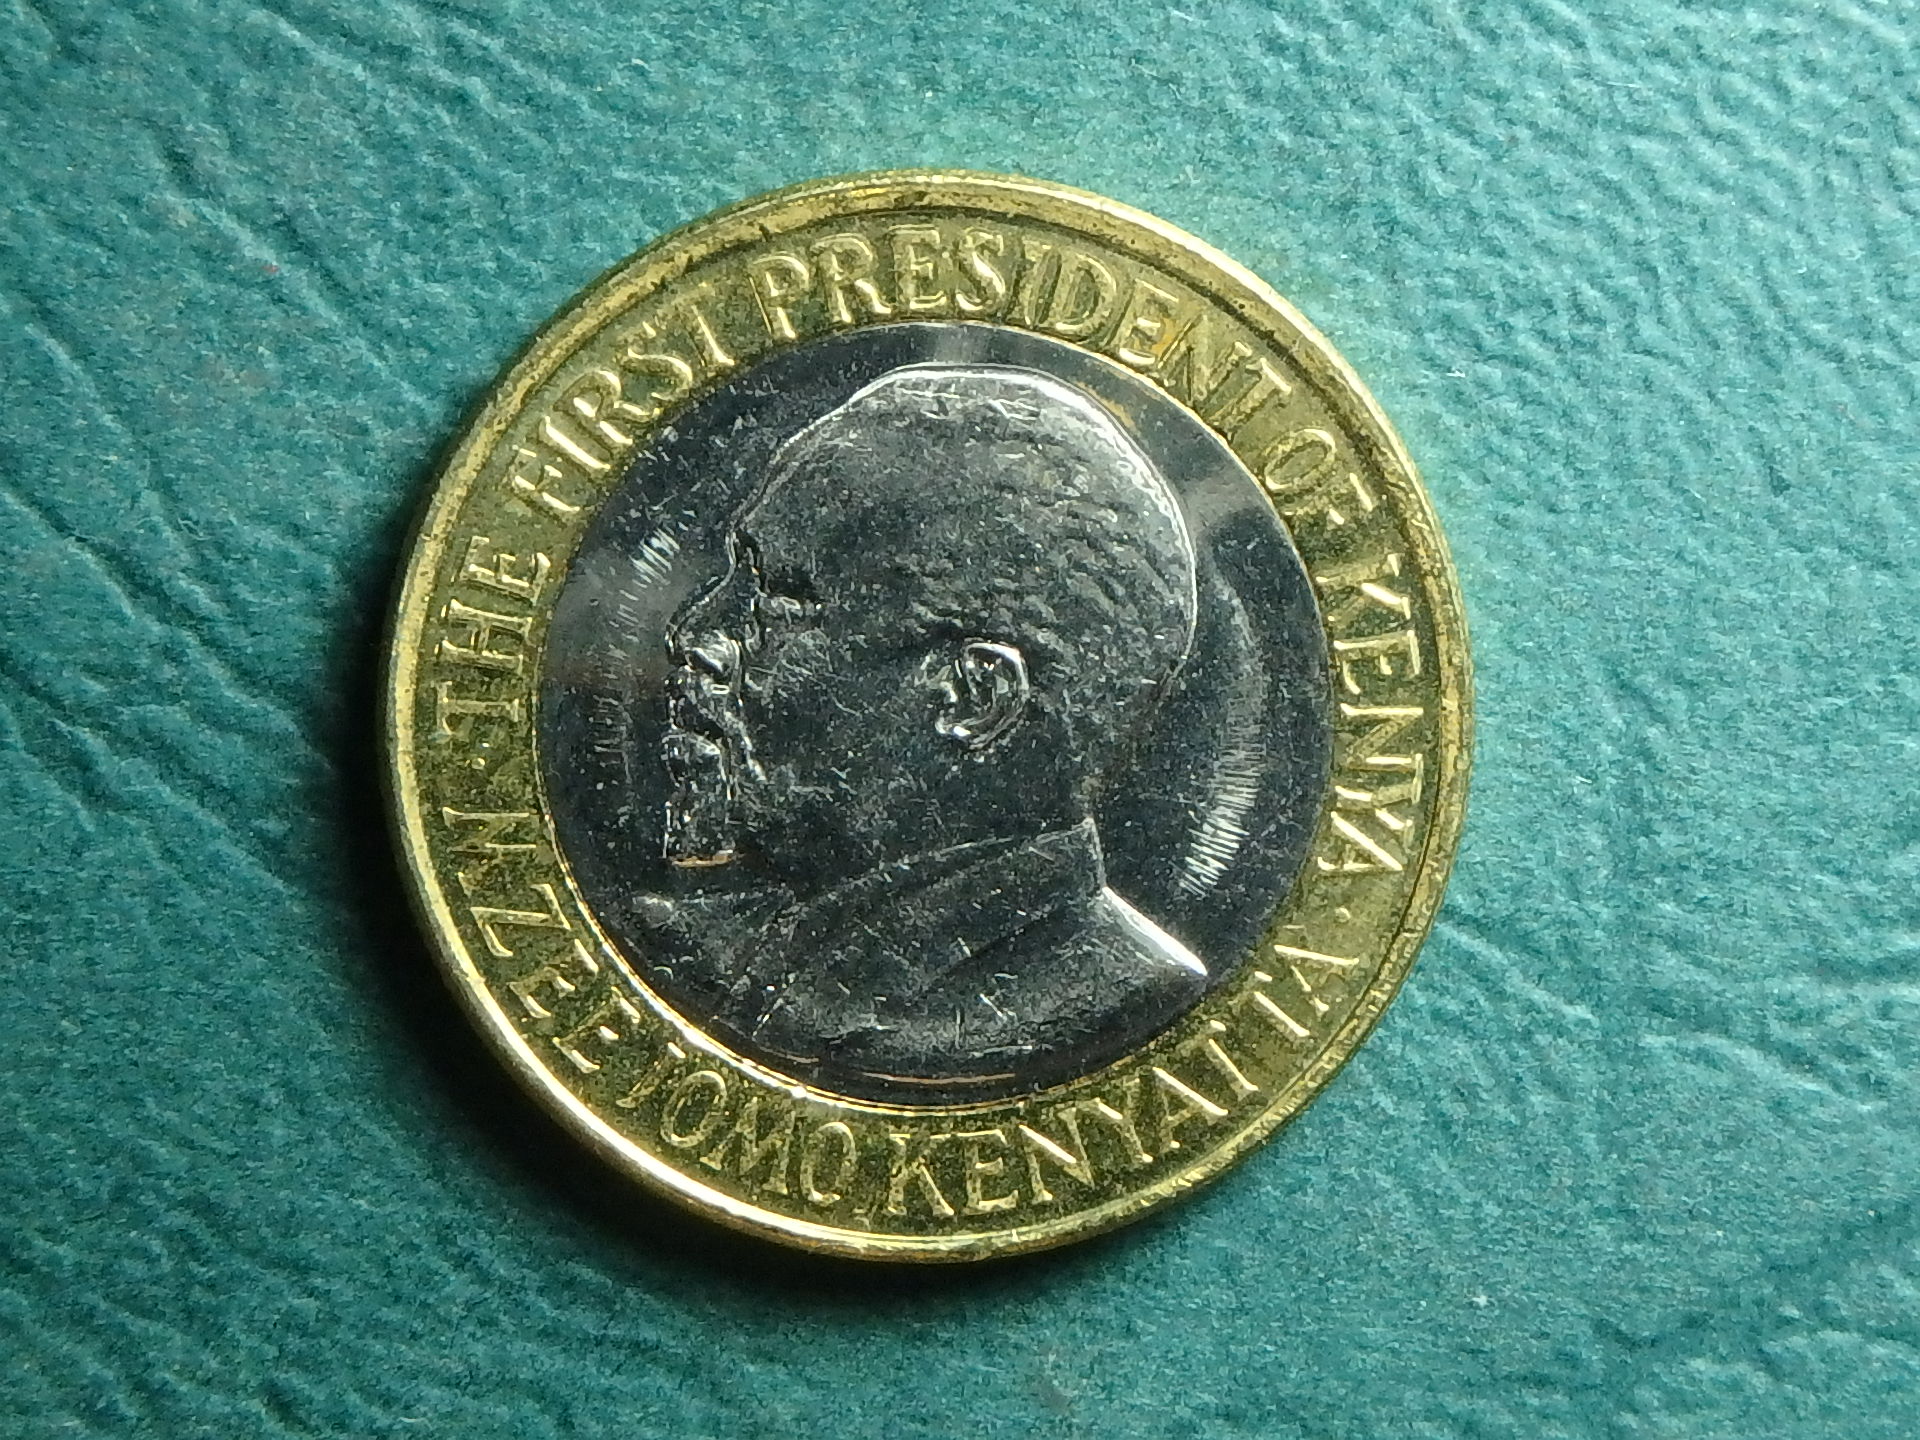 2010 Kenya 10 s obv.JPG